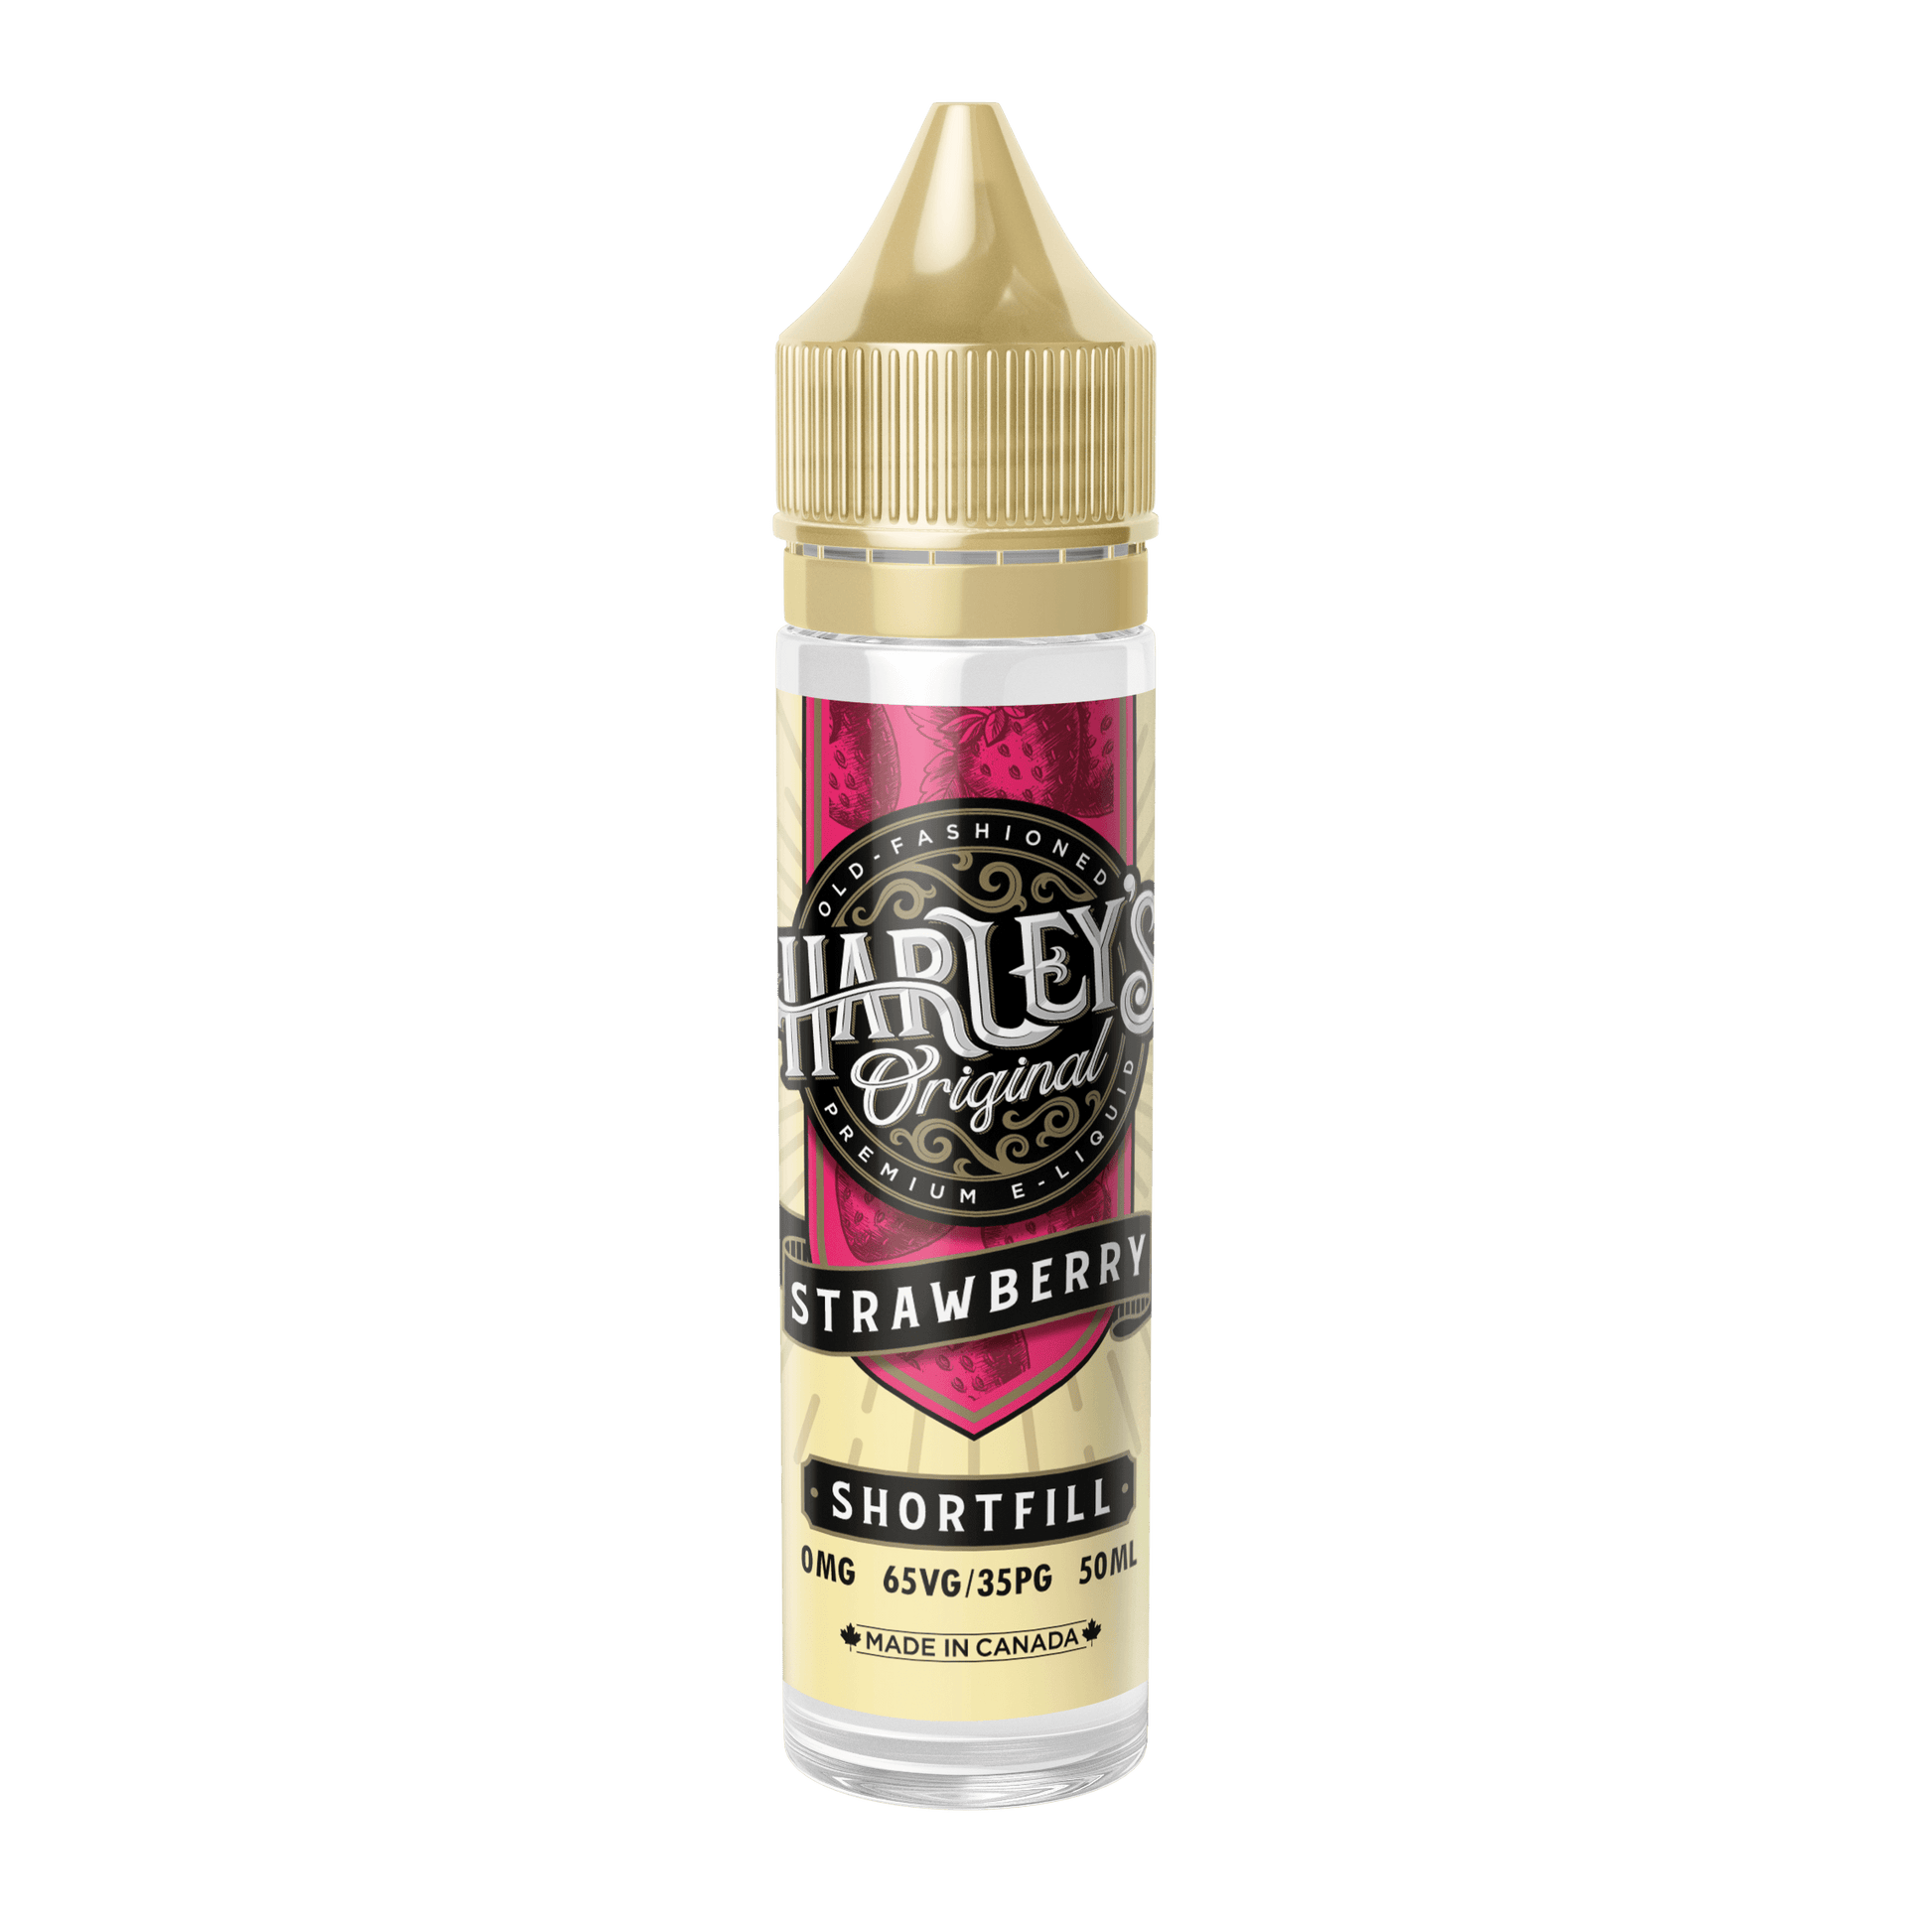 Strawberry E-Liquid by Harley's Original 